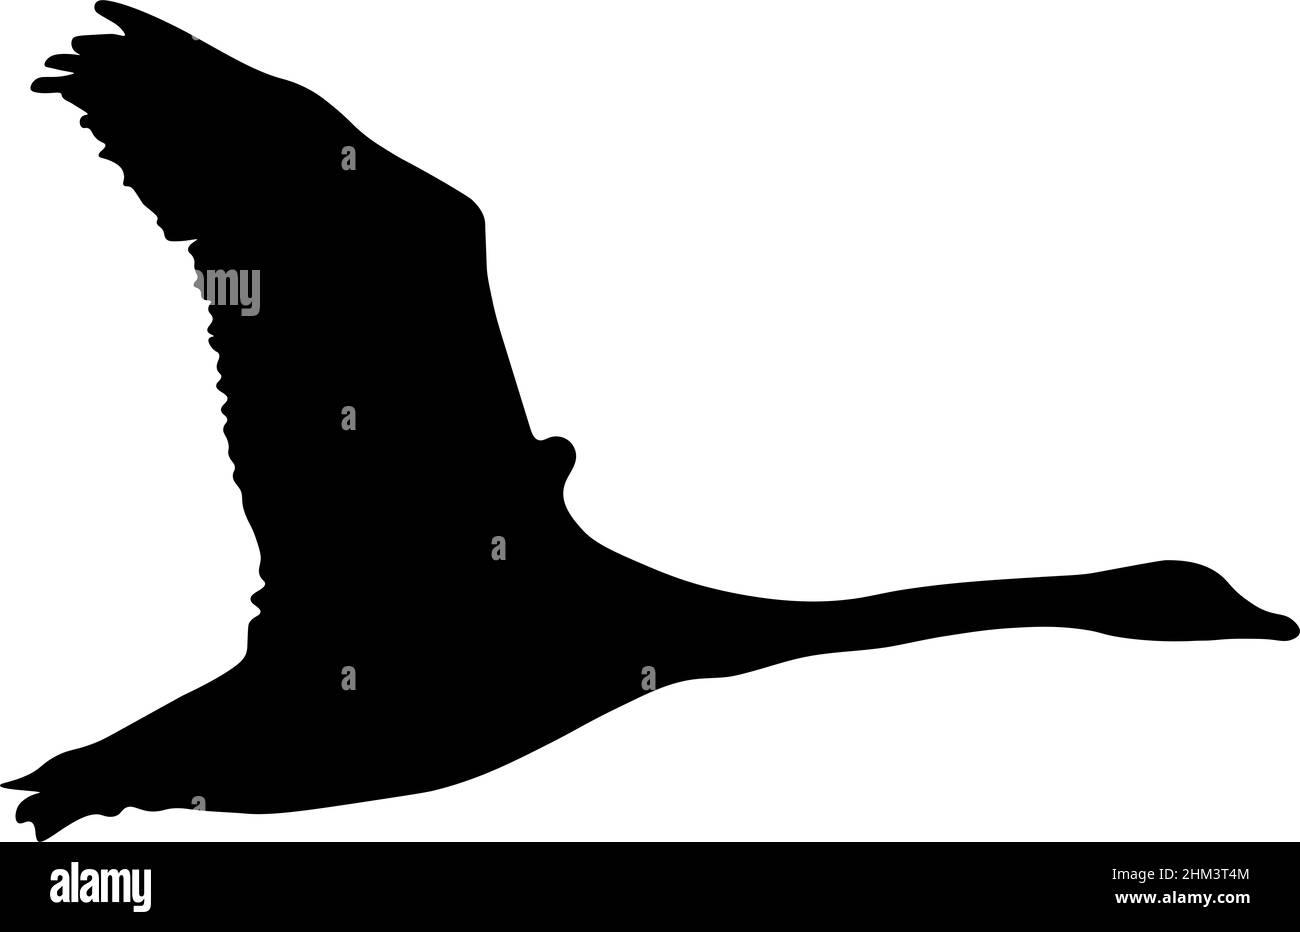 Illustration de cygne en vol créée en isolant le contour d'un oiseau d'une photographie et en appliquant un remplissage noir. Banque D'Images